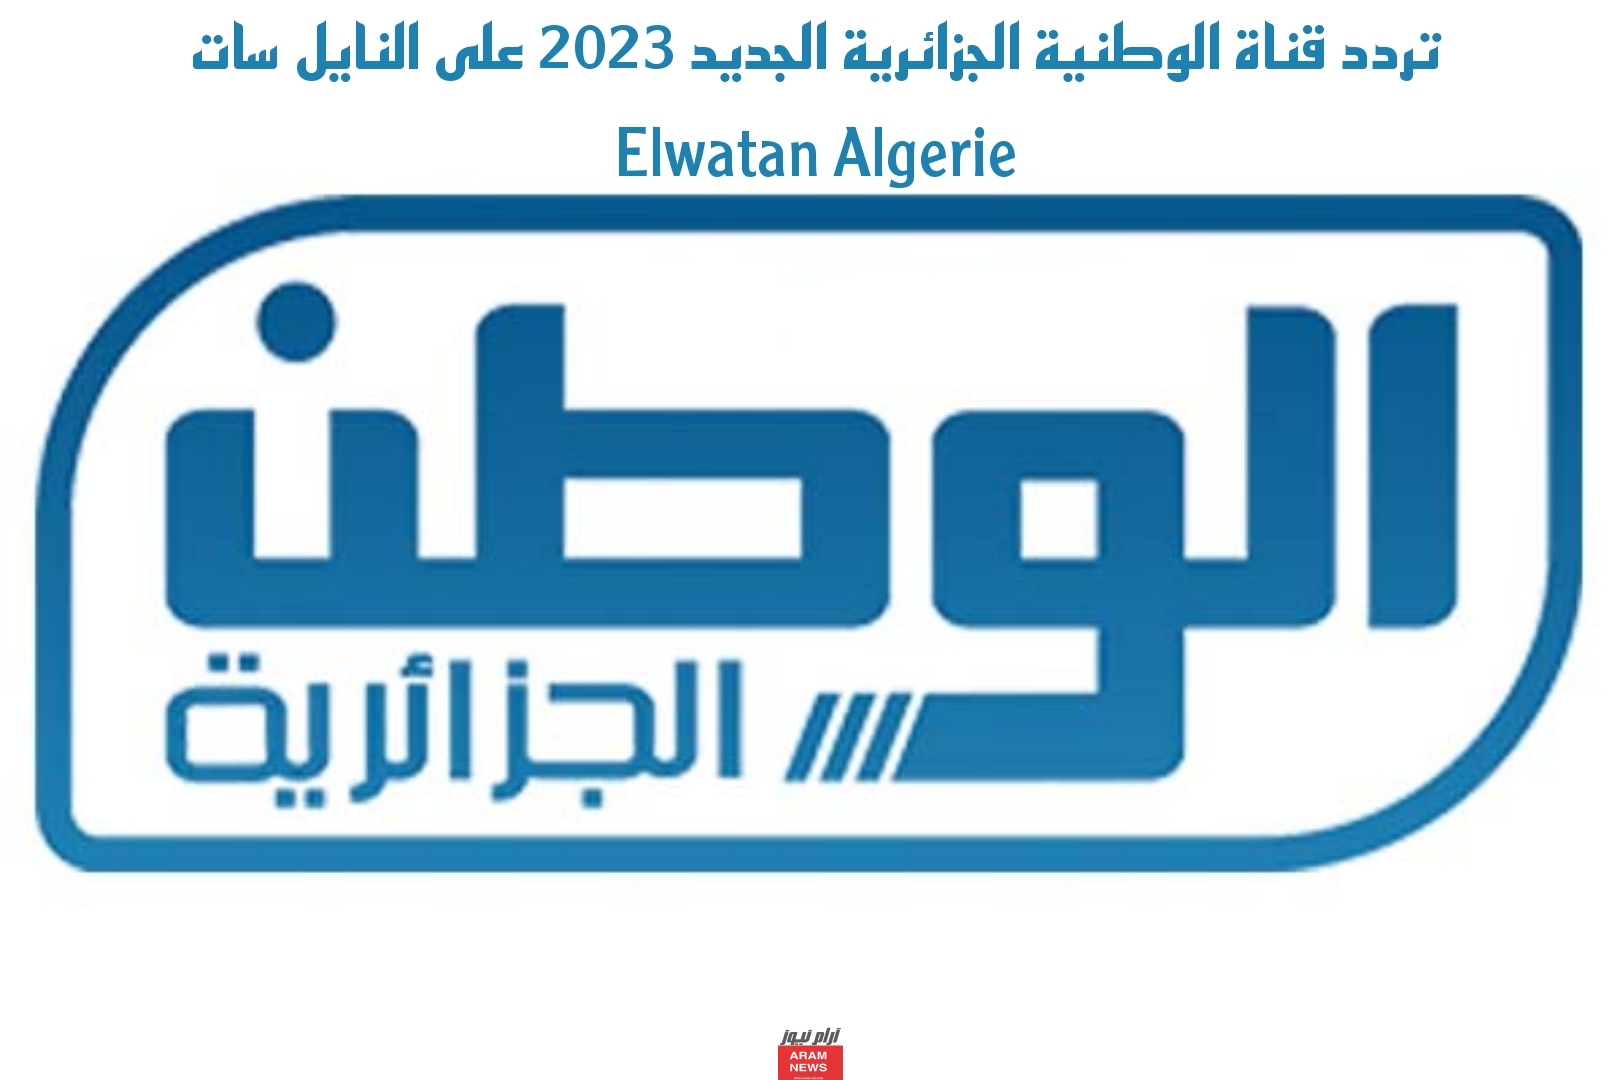 تردد قناة الوطنية الجزائرية الجديد 2023 على النايل سات Elwatan Algerie